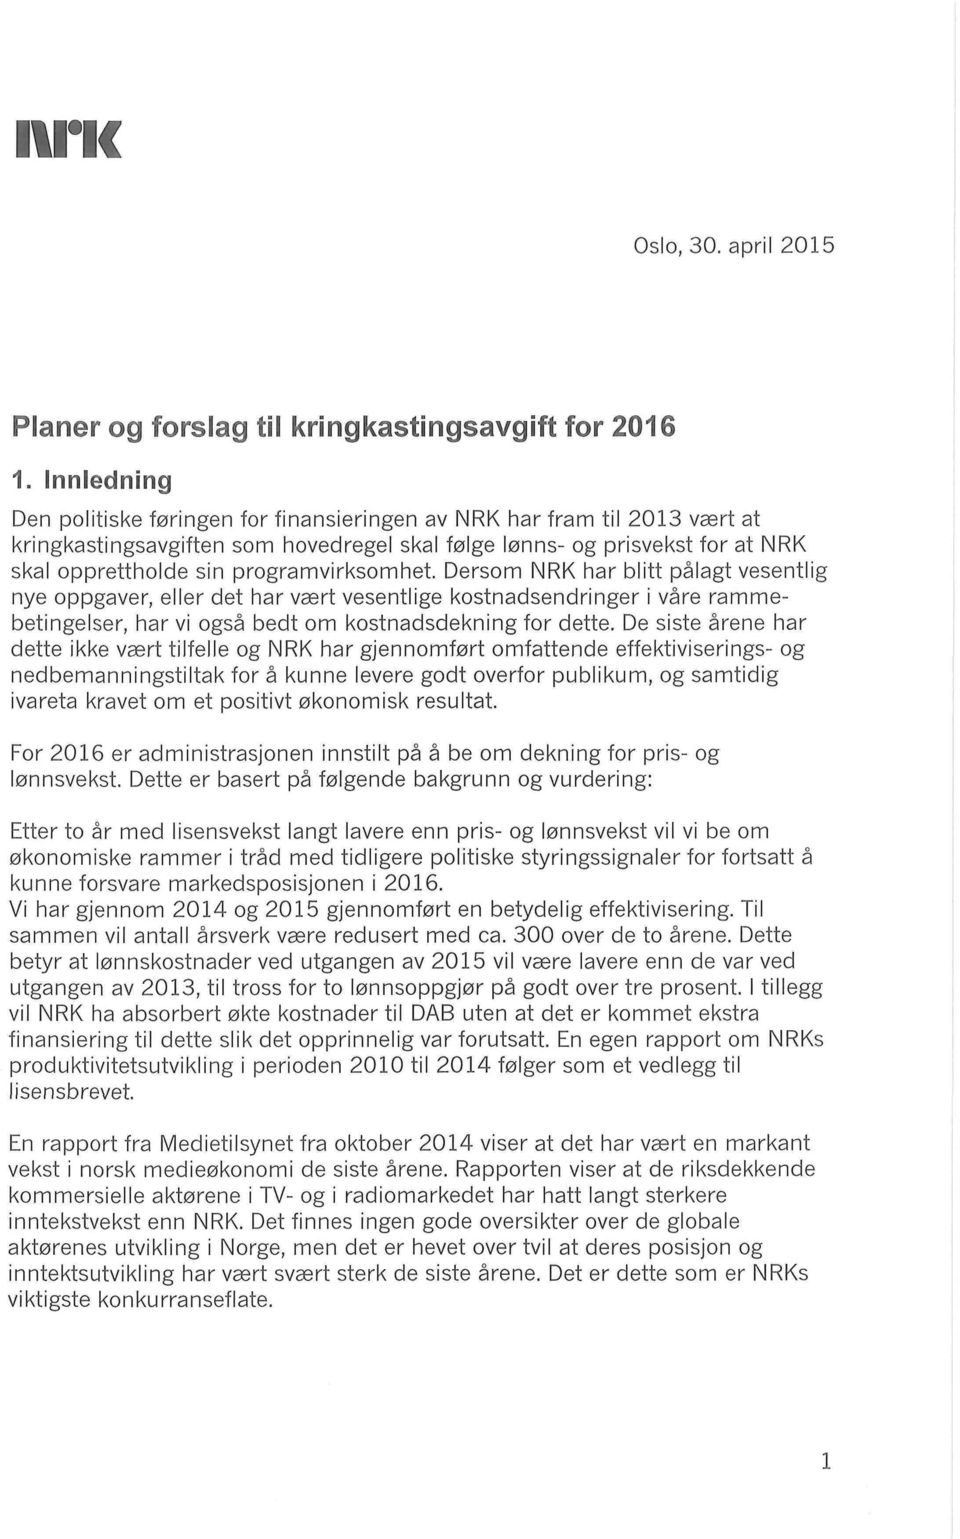 programvirksomhet. Dersom NRK har blitt pålagt vesentlig nye oppgaver, eller det har vært vesentlige kostnadsendringer i våre rammebetingelser, har vi også bedt om kostnadsdekning for dette.